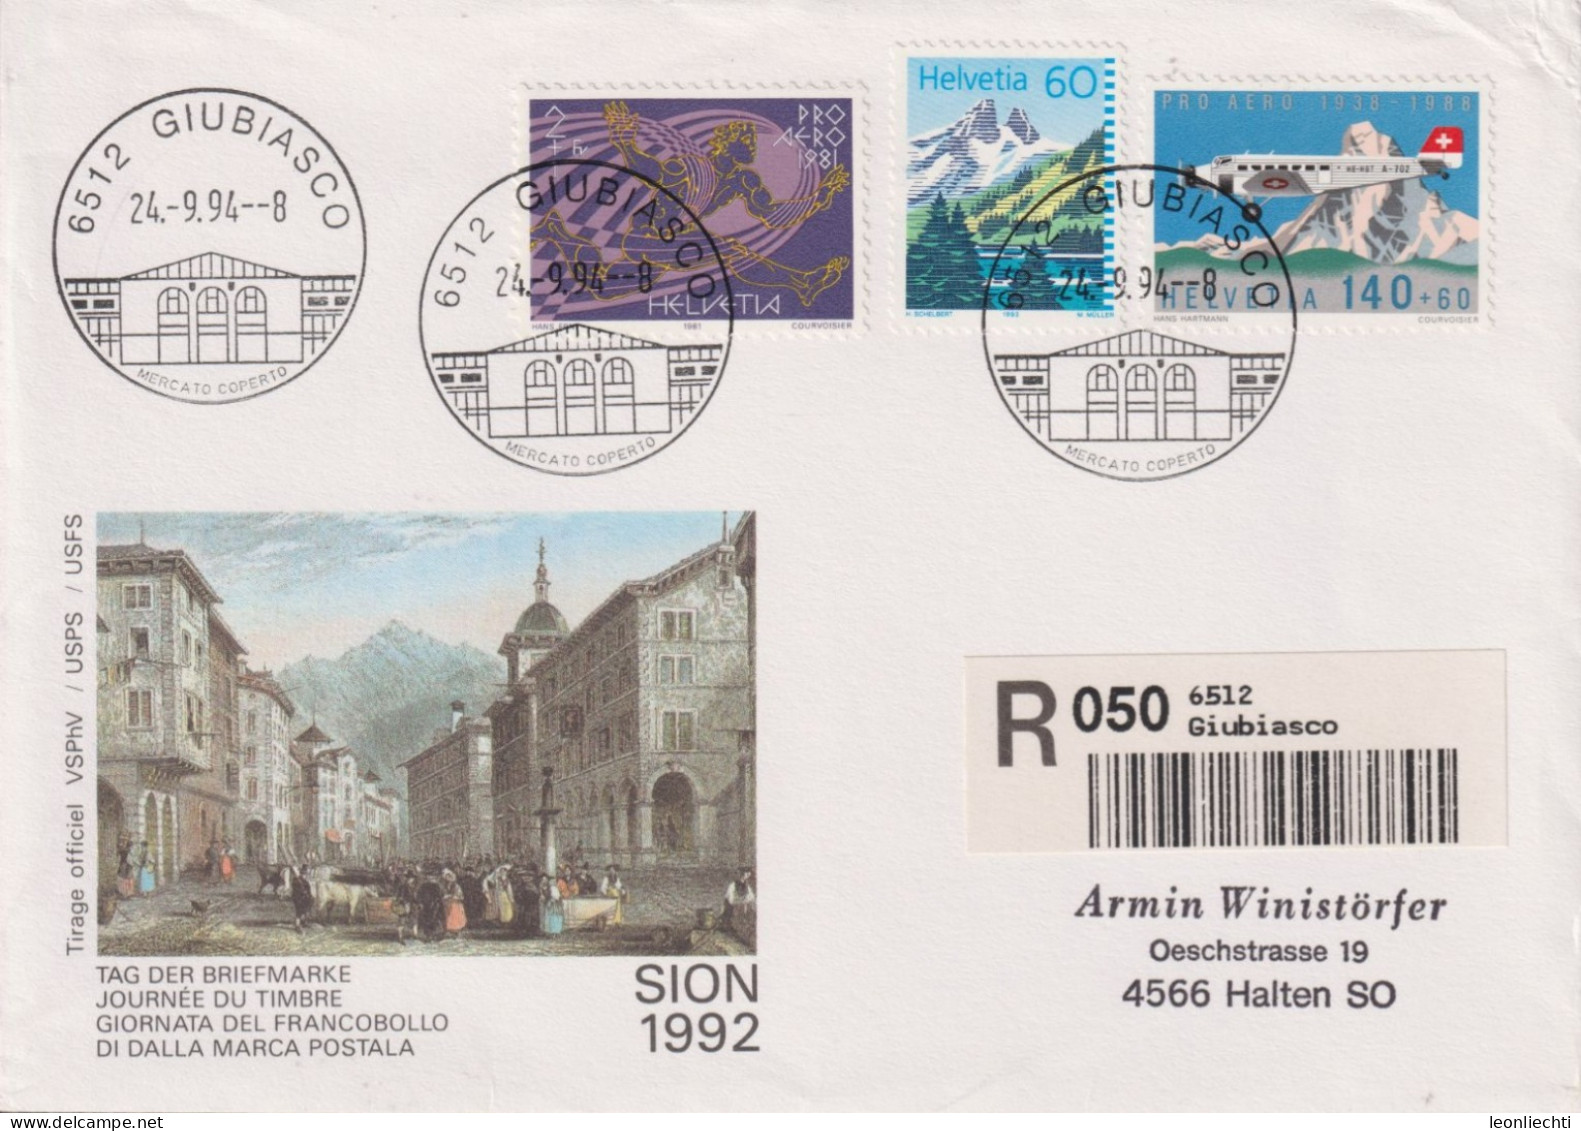 1994 Schweiz Tag Der Briefmarke Sion, Zum:CH F49+W48+837, Mi:CH 1369+1196+1489, ° 6512 GIUBIASSCO - Cartas & Documentos